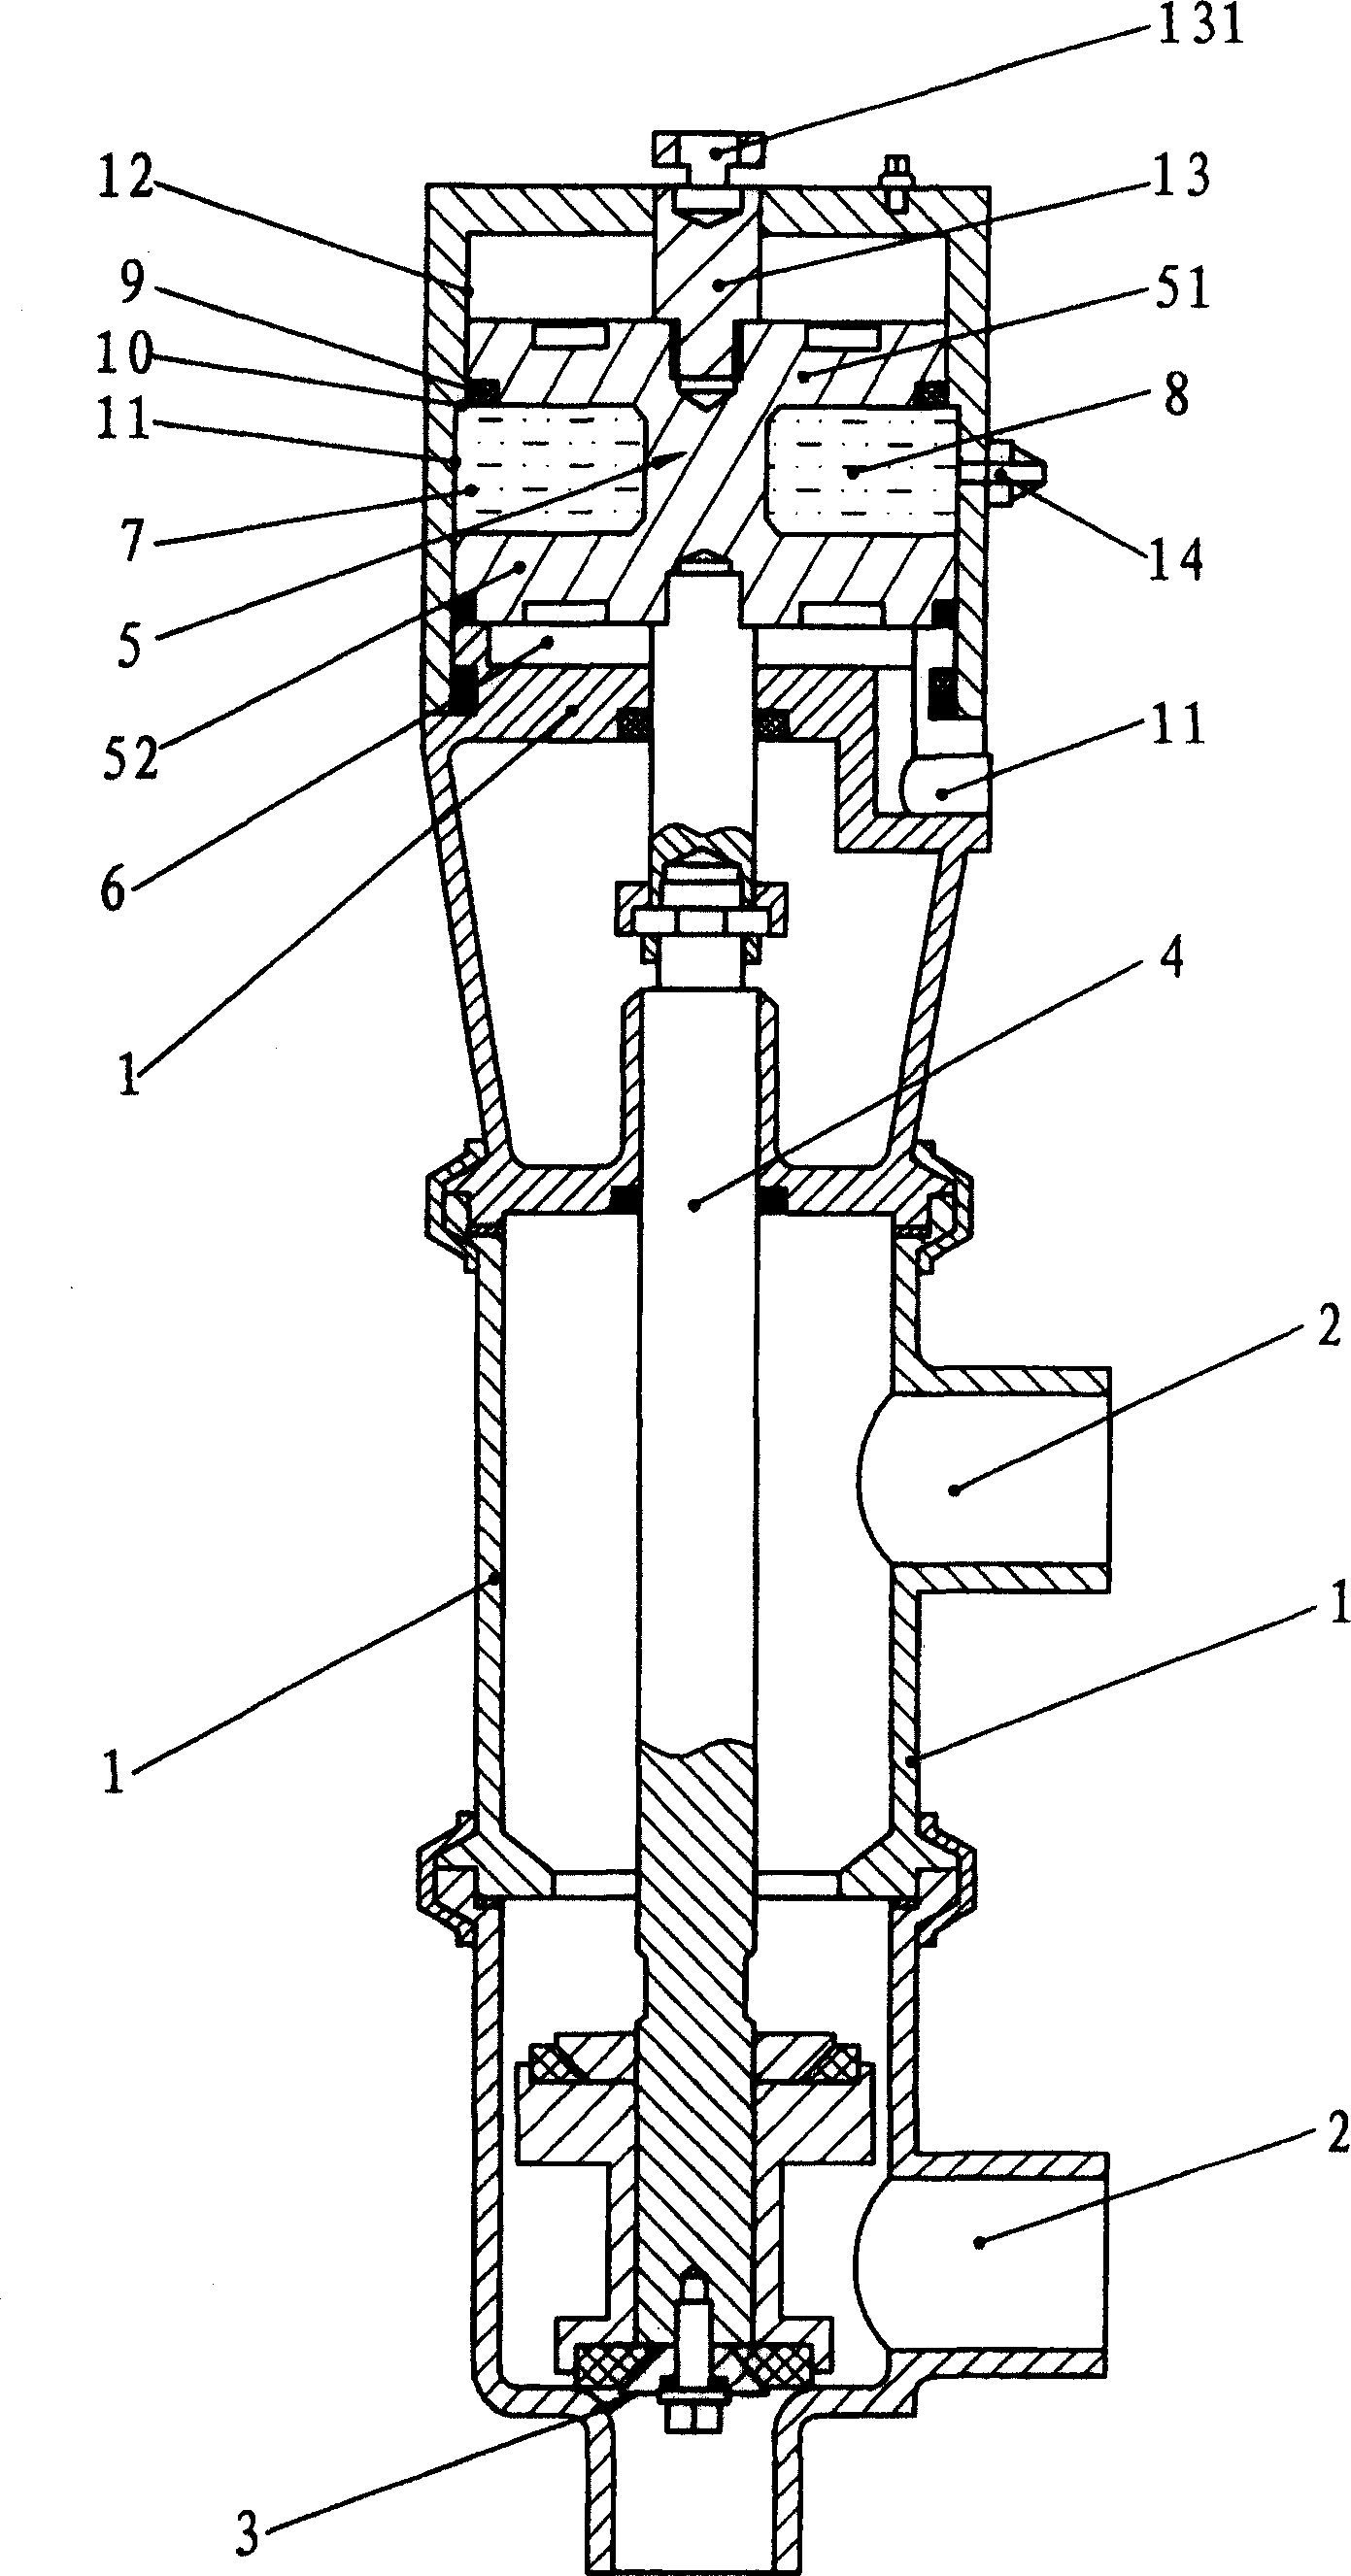 Liquid-controlled type multi-purpose valve